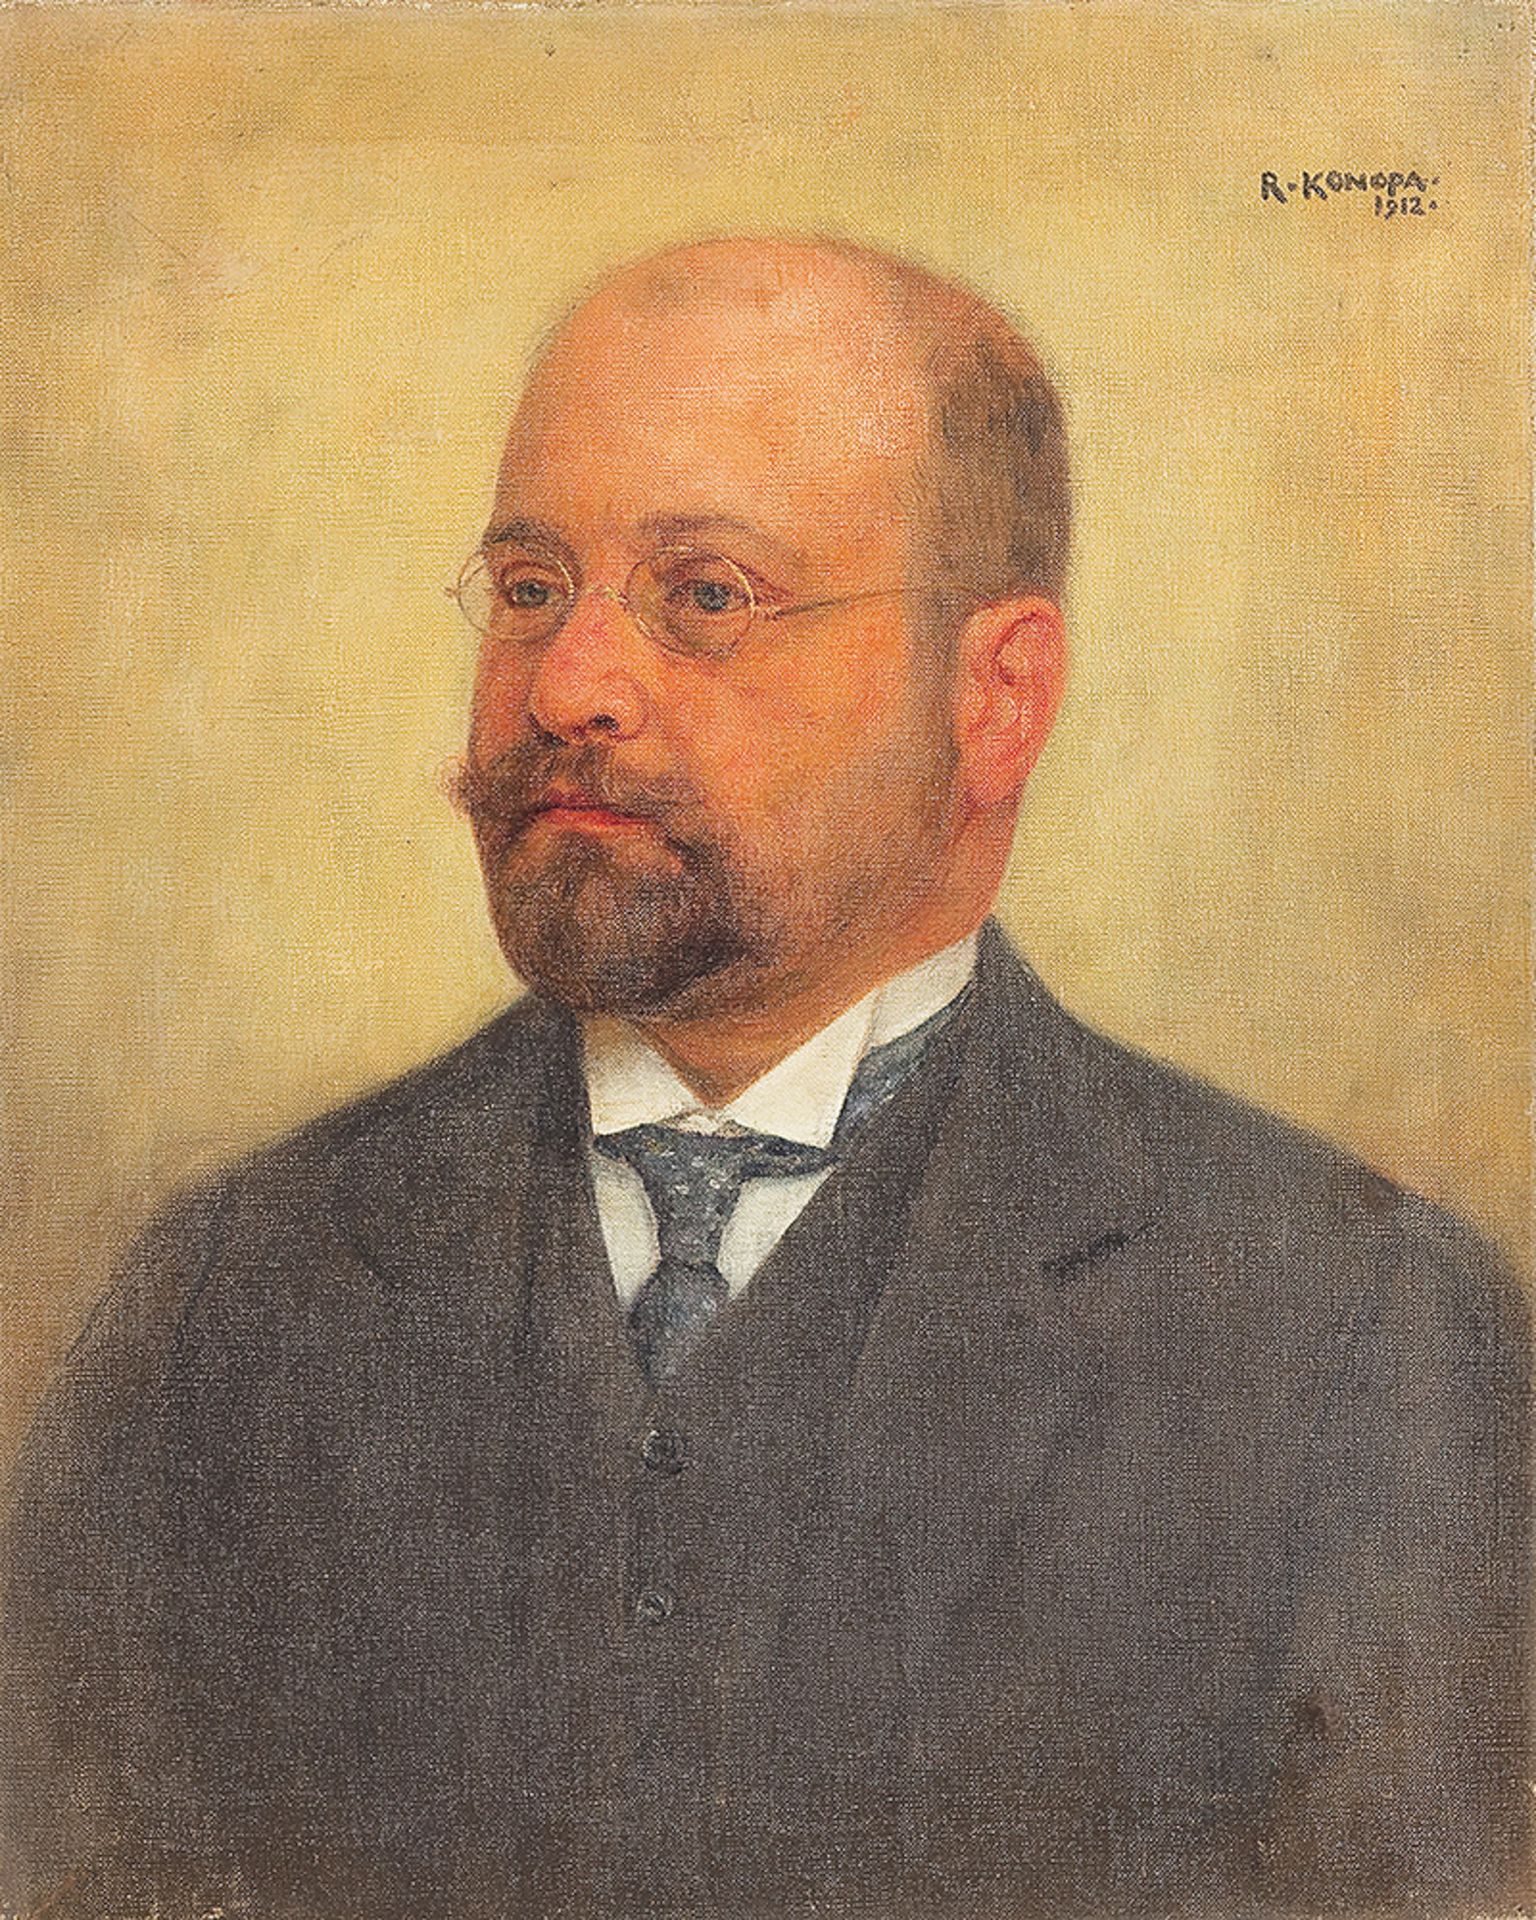 RUDOLF KONOPA (Vienna 1864 - 1936 Scheibbs)